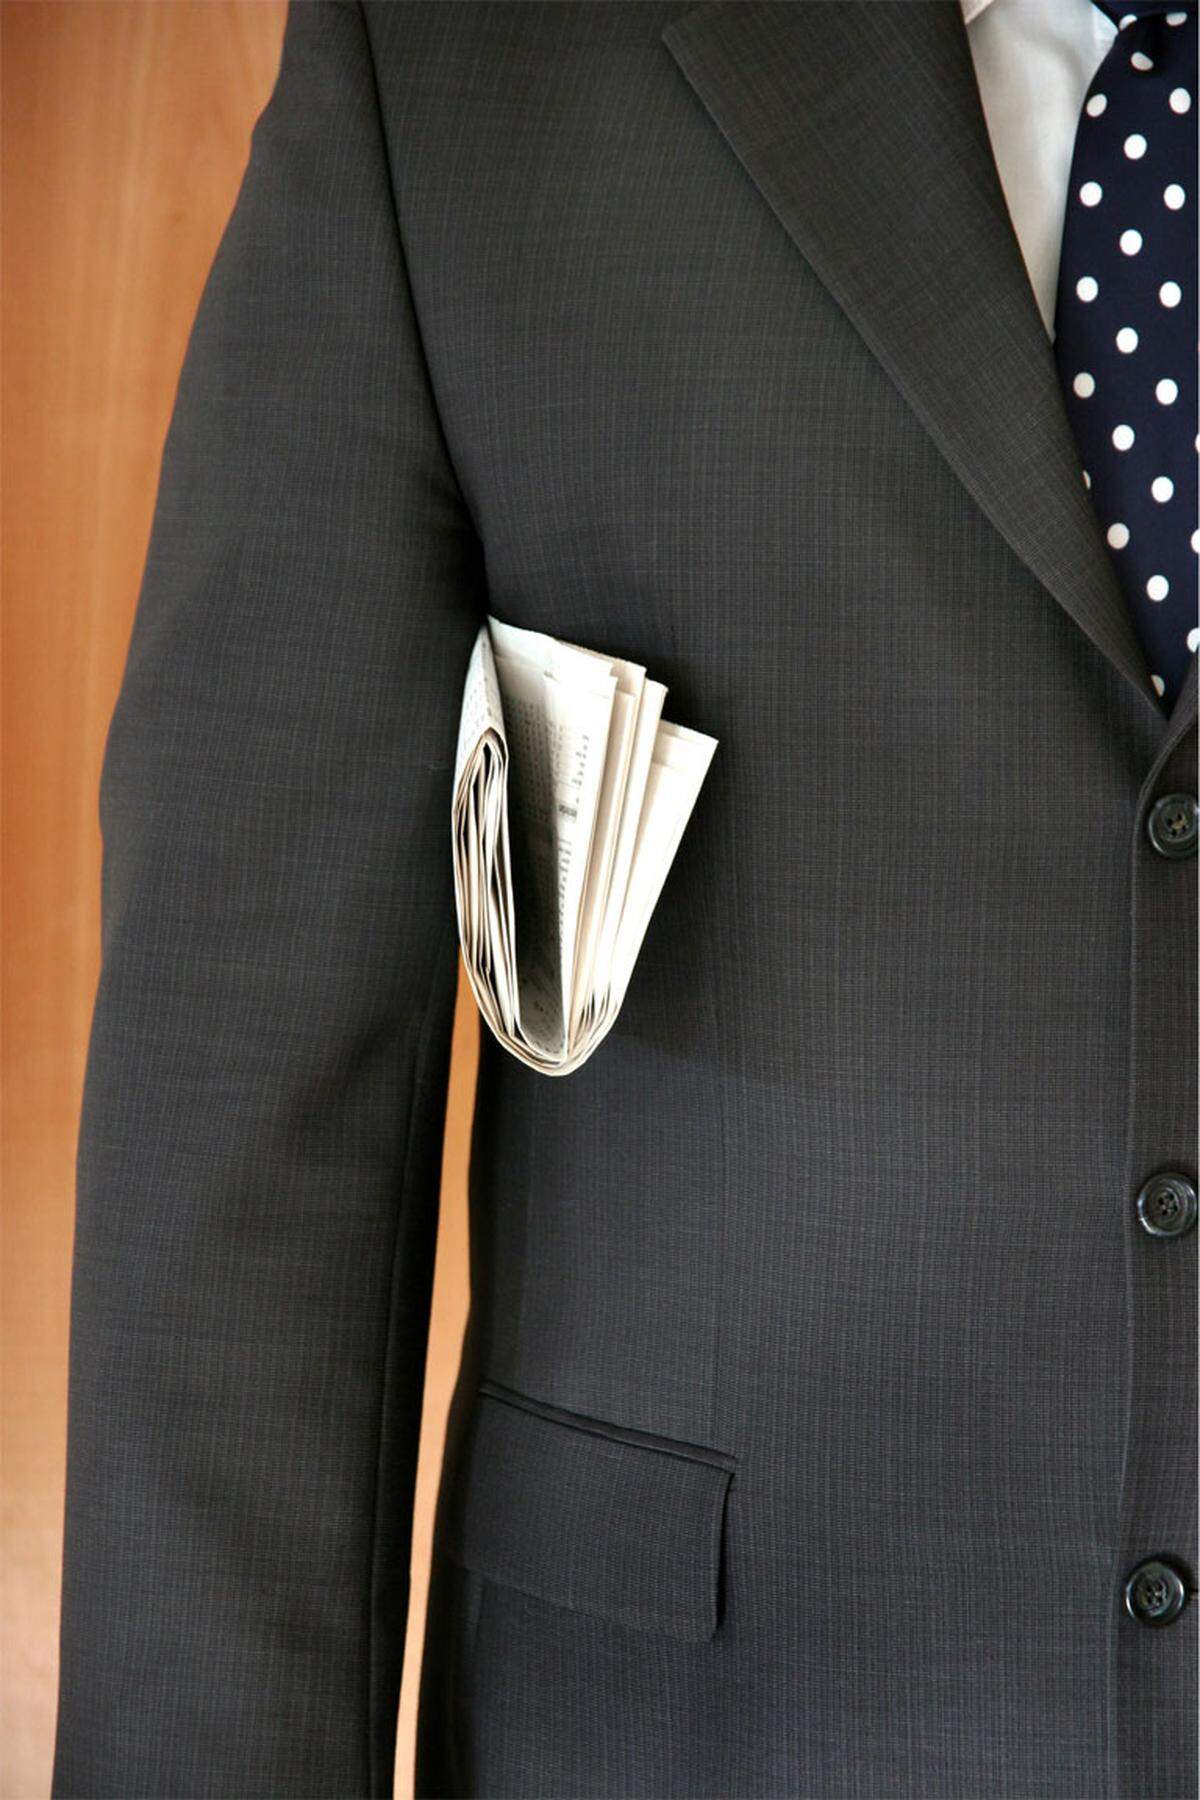 Ganz anders als bei Greenspans Unterhosen sieht es offenbar aus, wenn man den Krawatten-Markt beobachtet. Als in Großbritannien 2007 viele Menschen von der Entlassung bedroht waren, stieg der Verkauf von Krawatten stark an. Der Grund dafür könnte sein, dass die Angestellten mit guter Kleidung ihren Chefs imponieren wollten.